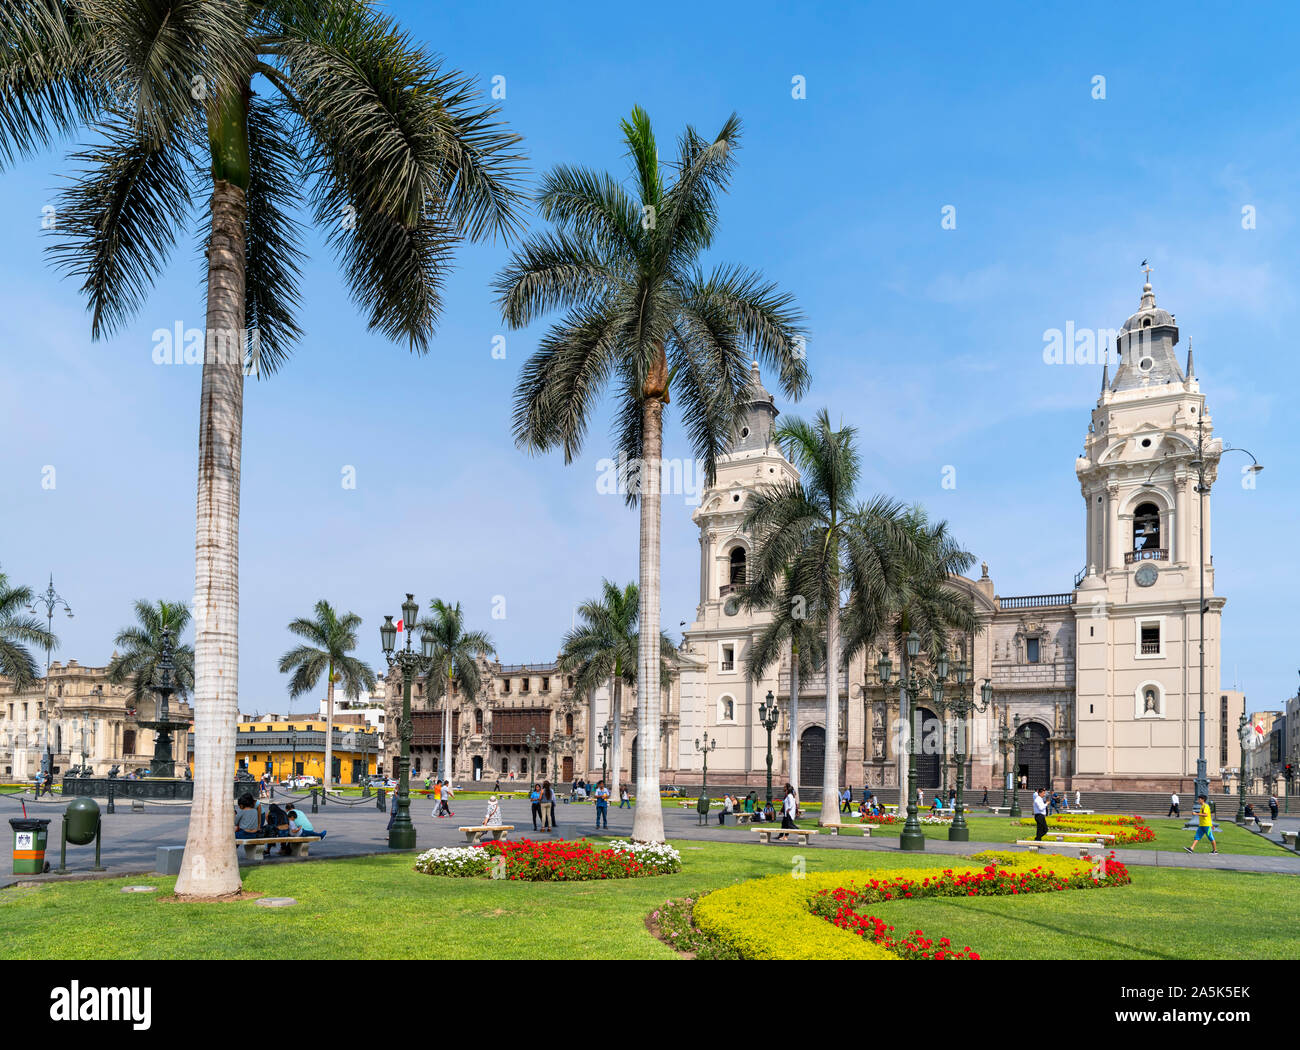 Plaza de Armas (Plaza Mayor) dans le centre historique (Centro historico), regard vers la cathédrale, Lima, Pérou, Amérique du Sud Banque D'Images